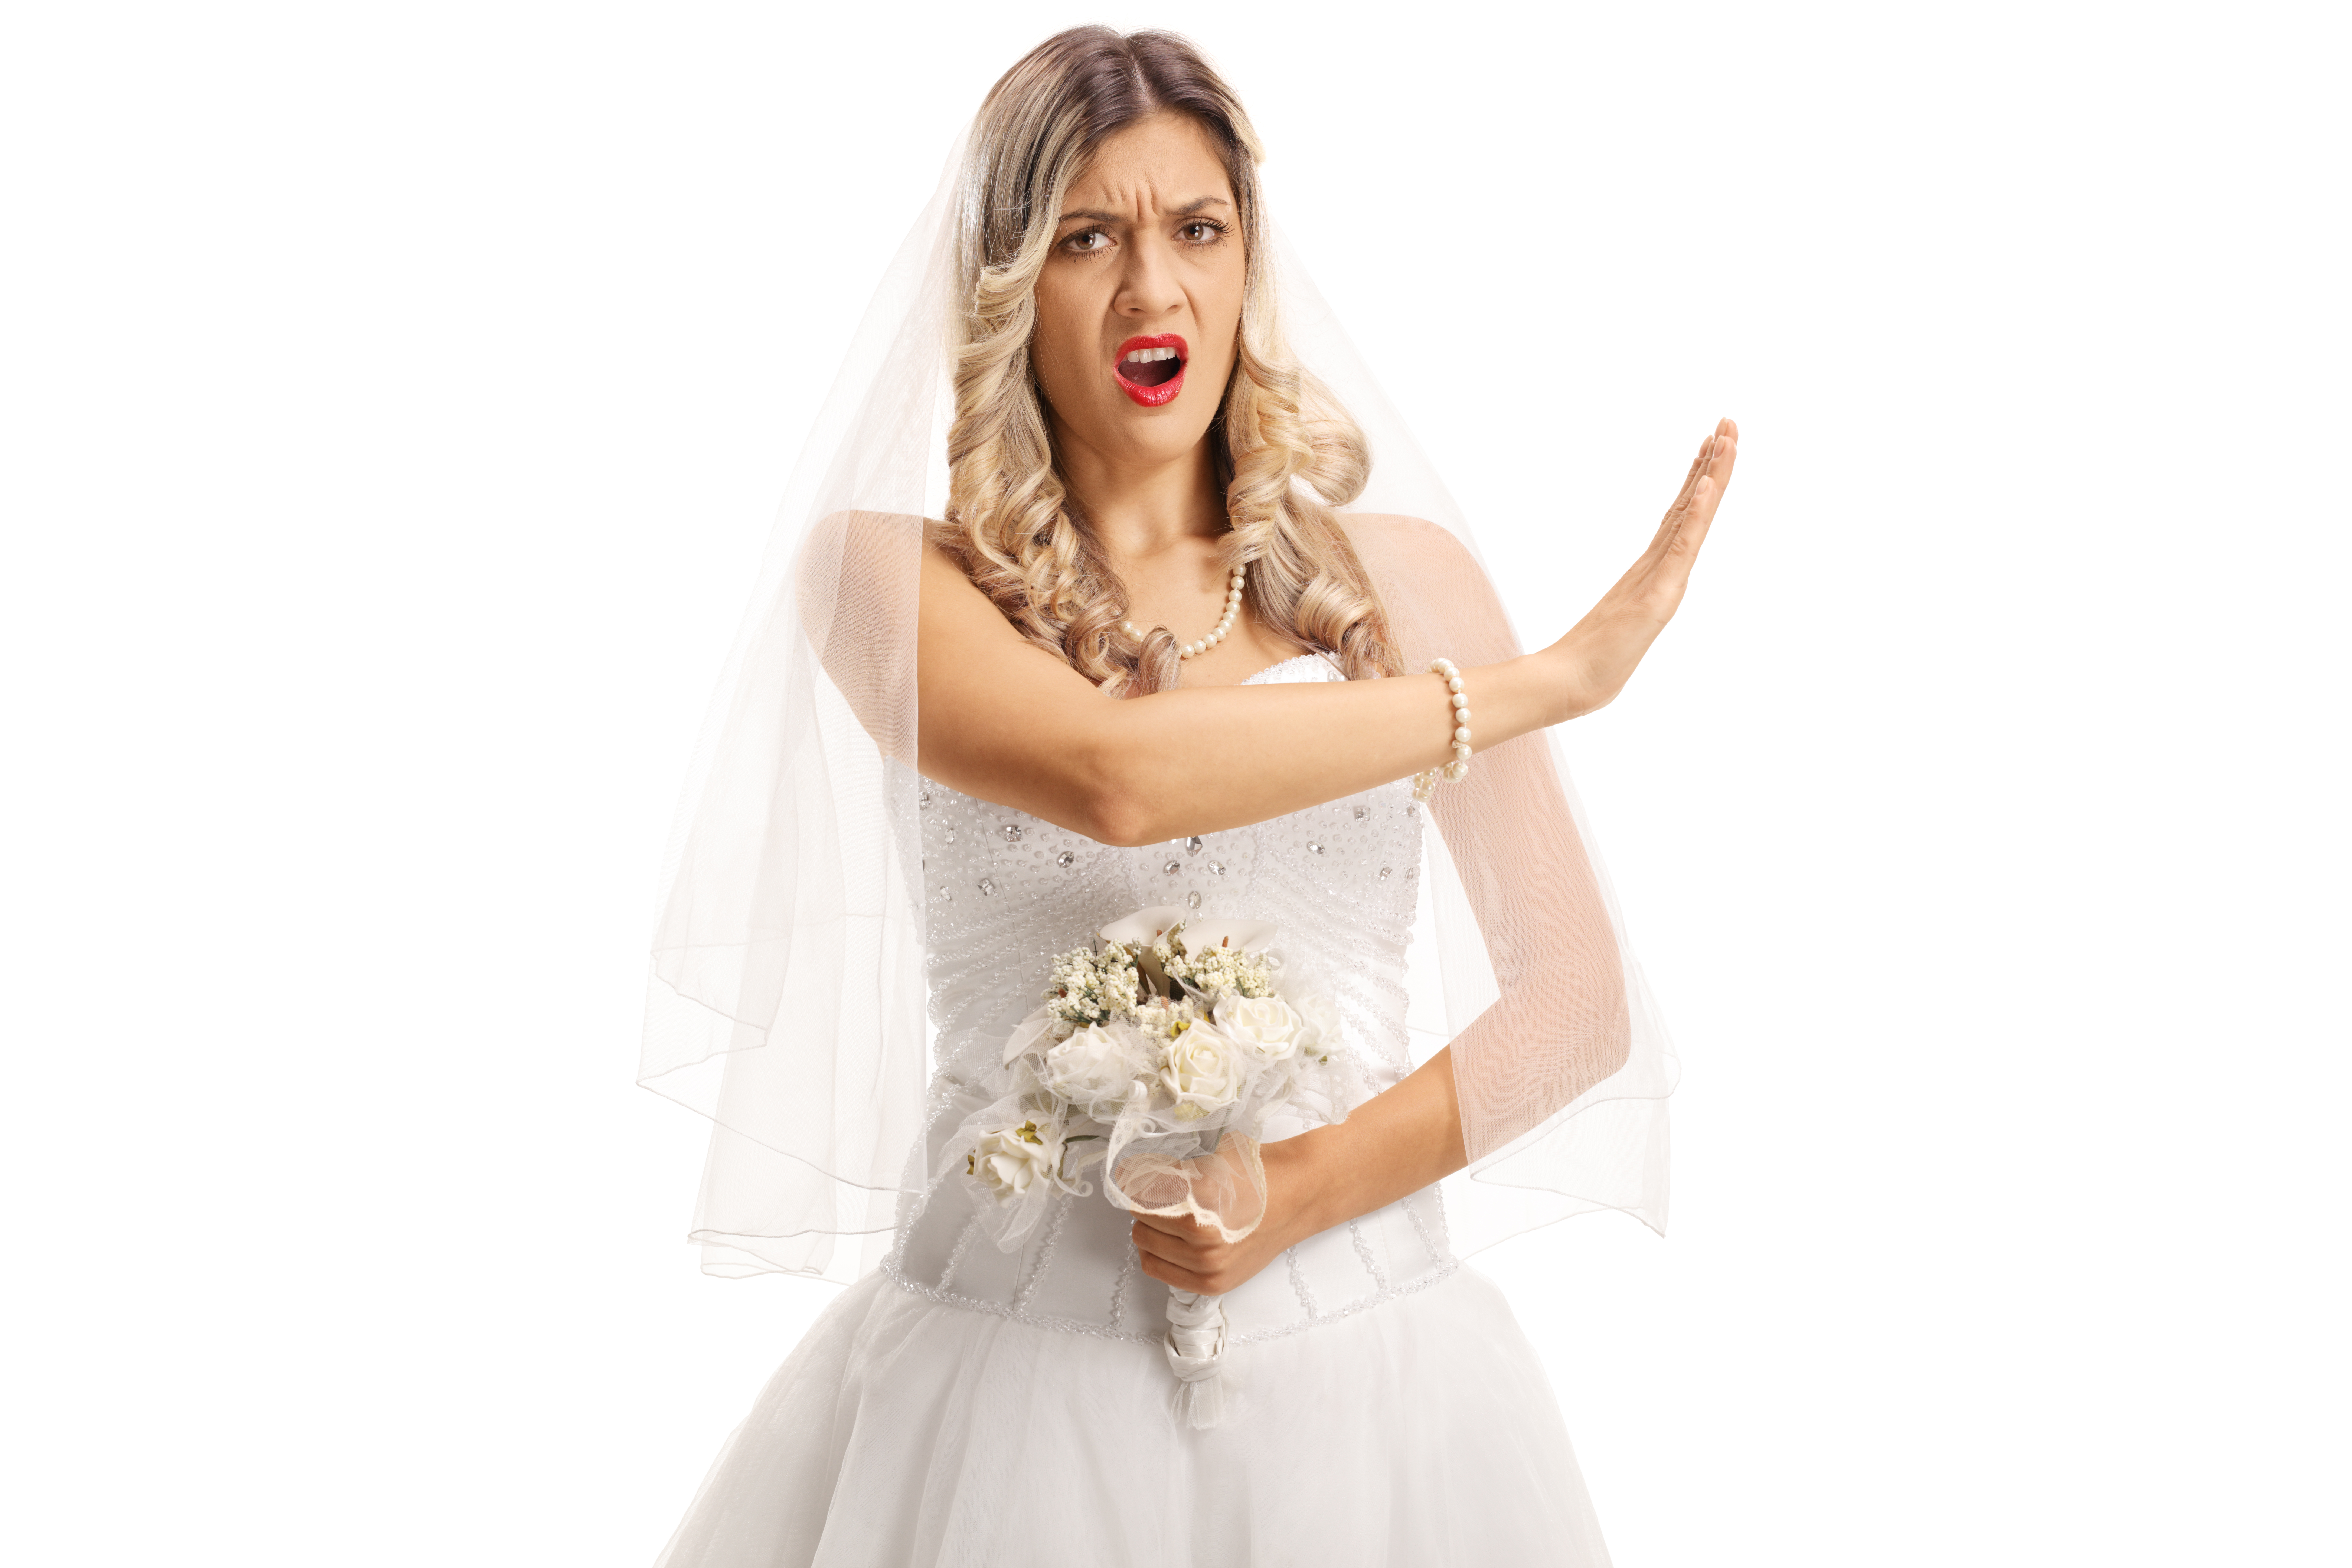 Eine wütende Braut, die mit ihrer Hand "Stopp" gebärdet | Quelle: Shutterstock